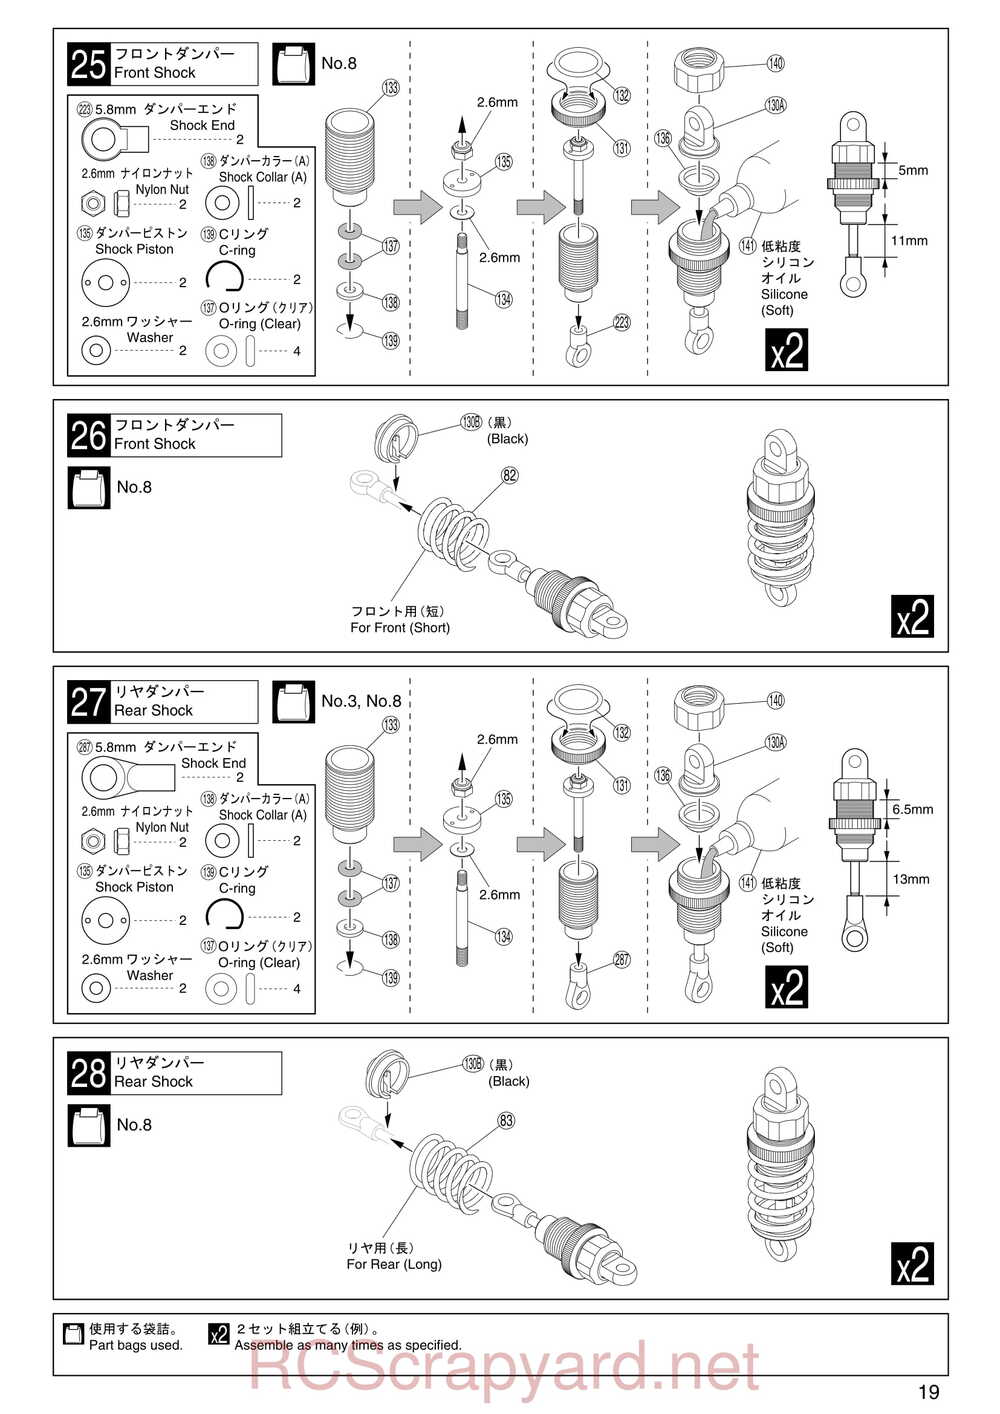 Kyosho - 31255 - V-One RR Evolution - Manual - Page 19